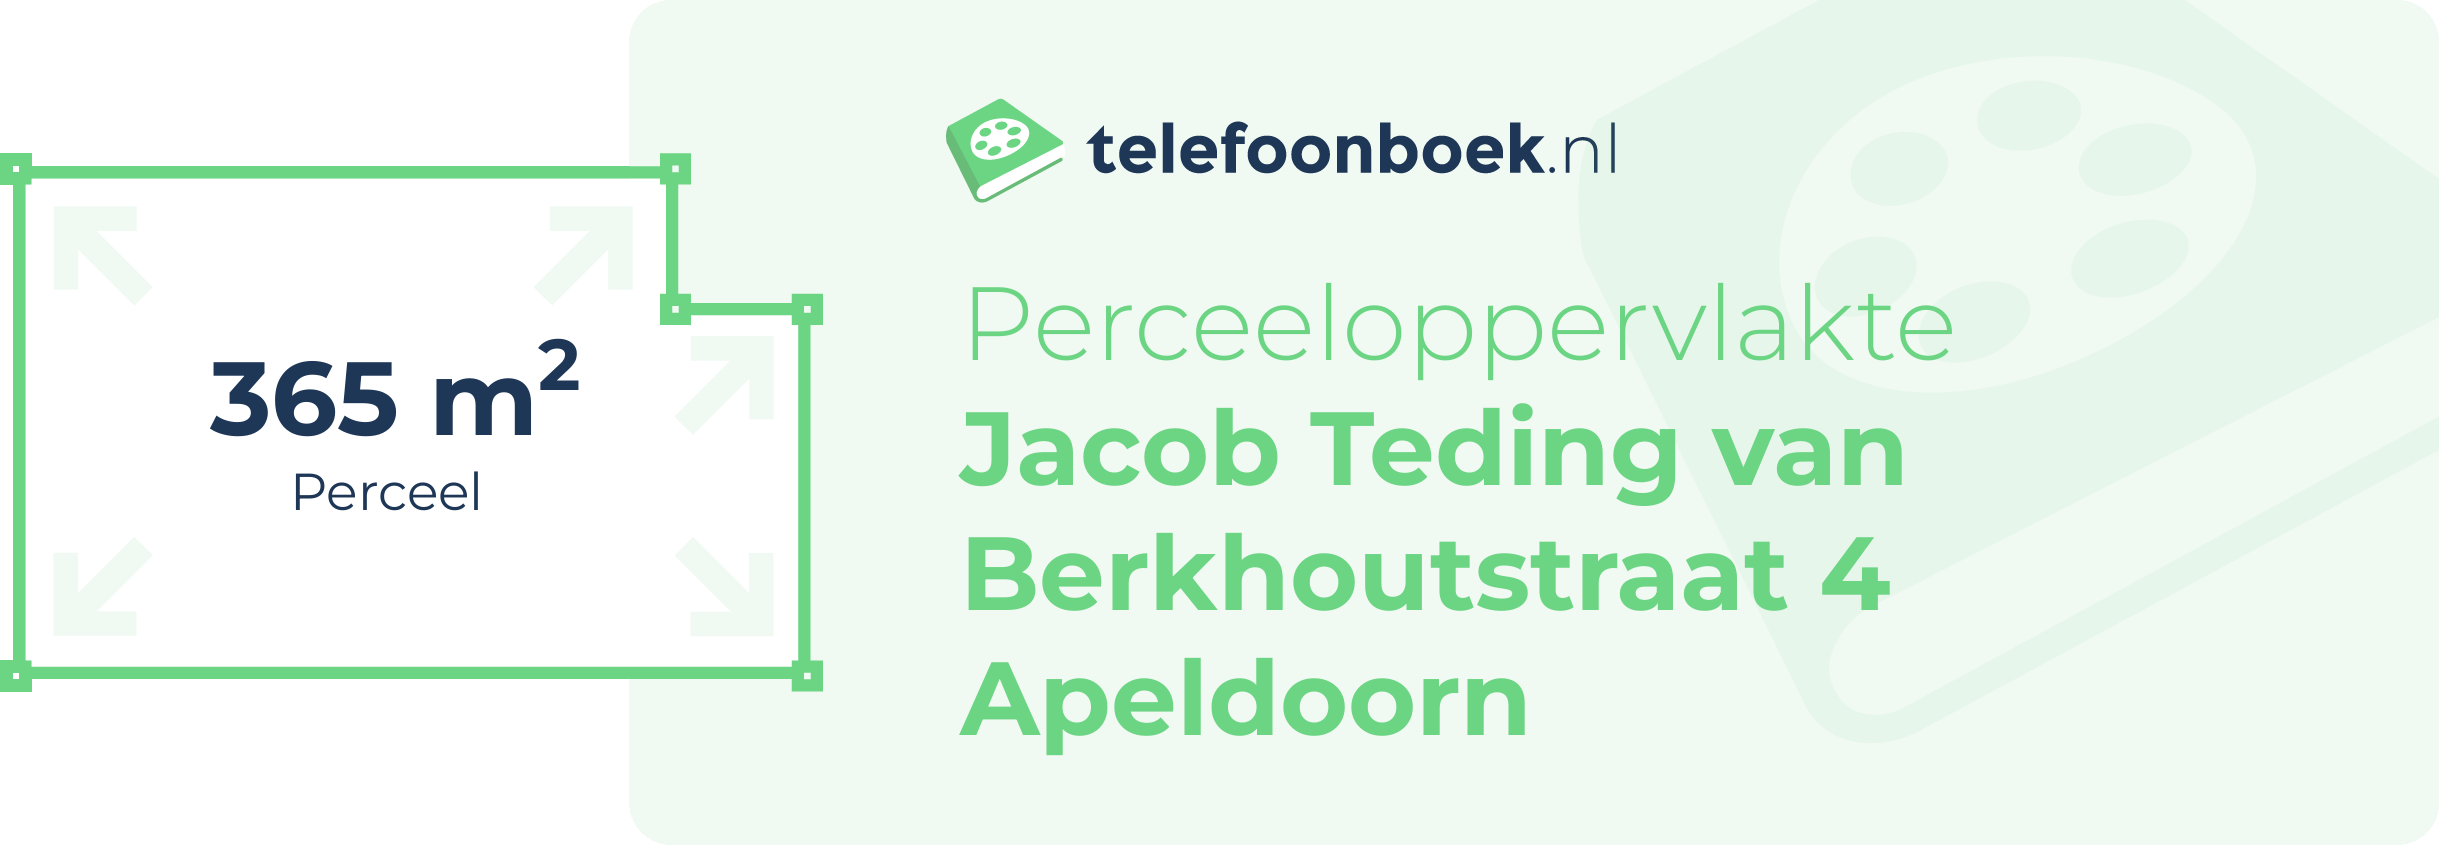 Perceeloppervlakte Jacob Teding Van Berkhoutstraat 4 Apeldoorn